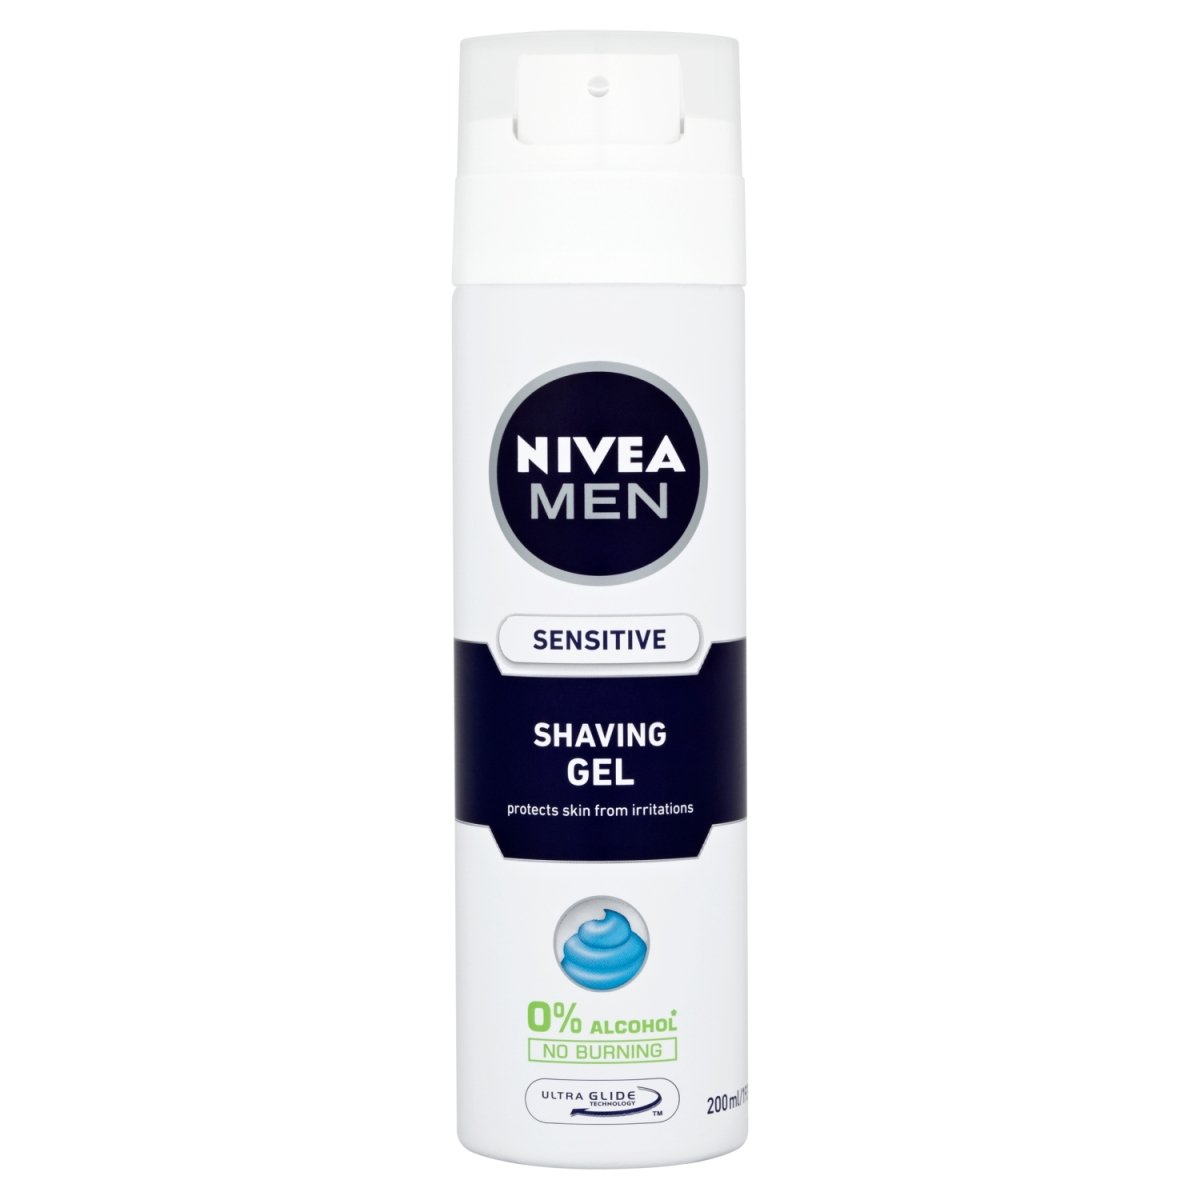 Nivea For Men Shave Gel Sensitive - Intamarque 5025970023243